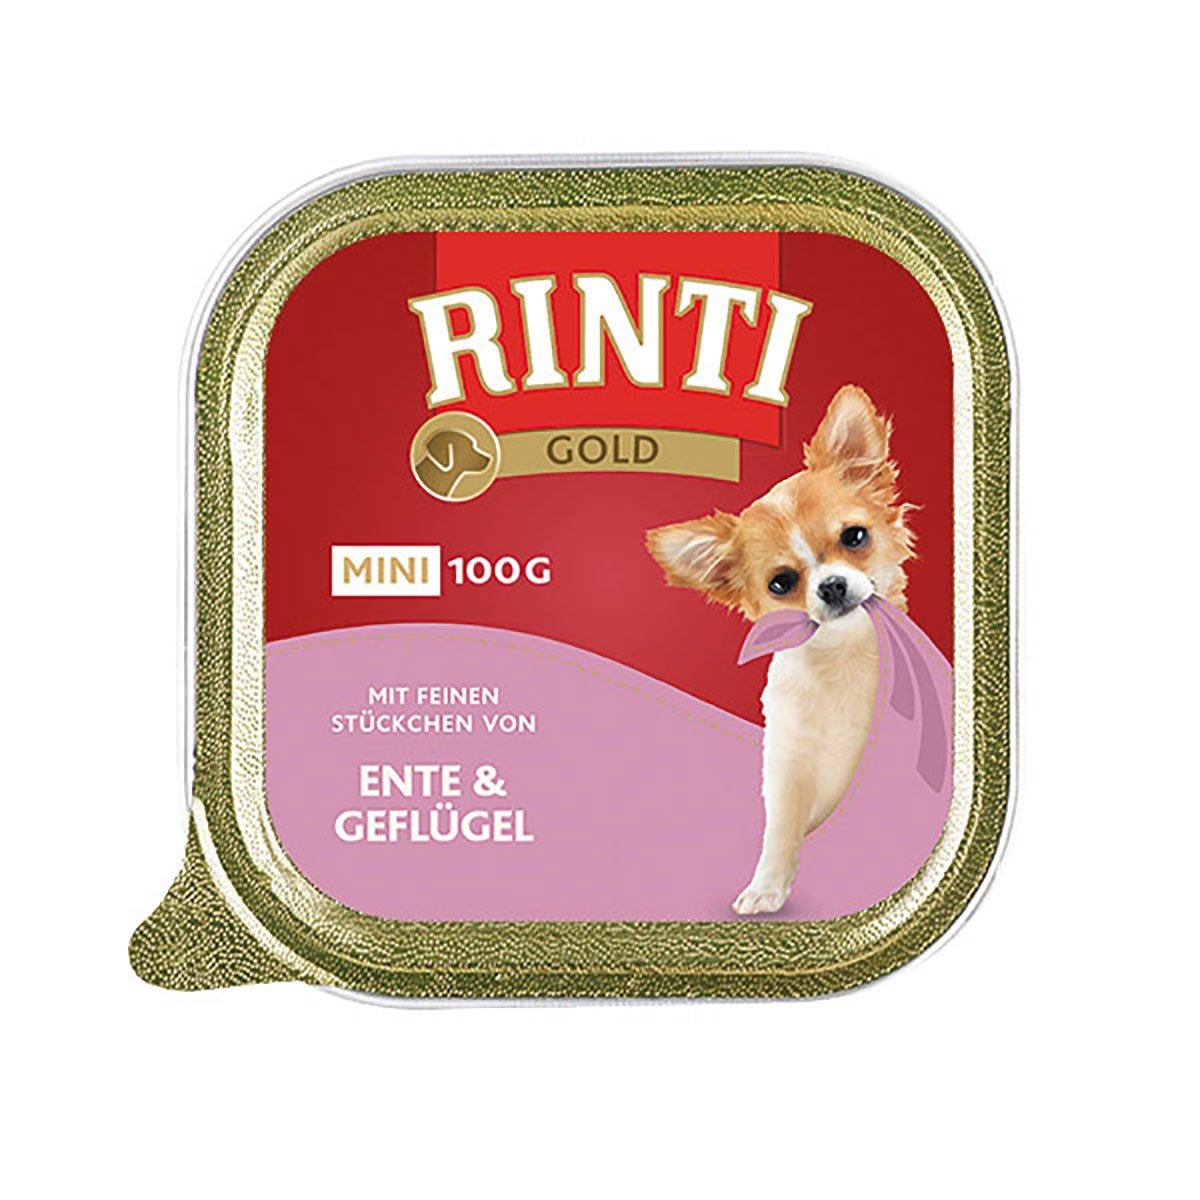 Rinti Gold Mini feine Stückchen von Ente & Geflügel 48x100g von Rinti